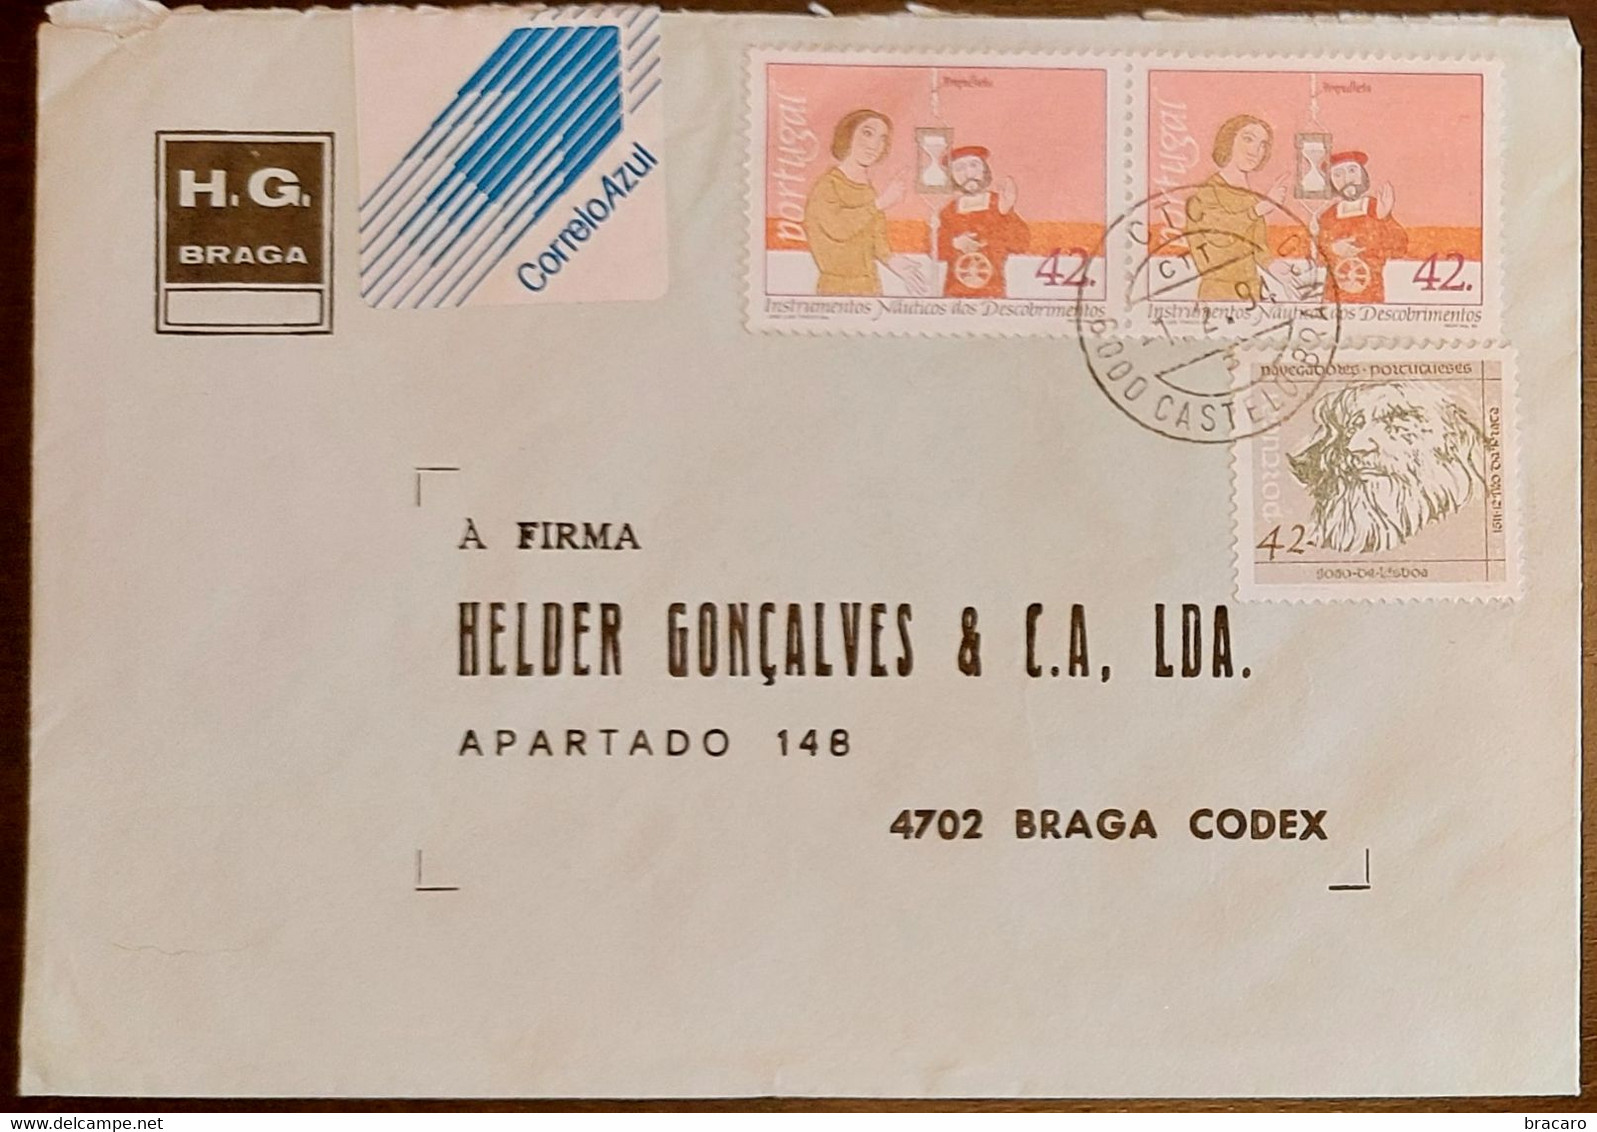 PORTUGAL - Cover 1.2.1994 - Cancel Castelo Branco - Stamps Instrumentos Náuticos + Navegadores 42$00 - H.G. Braga - Briefe U. Dokumente